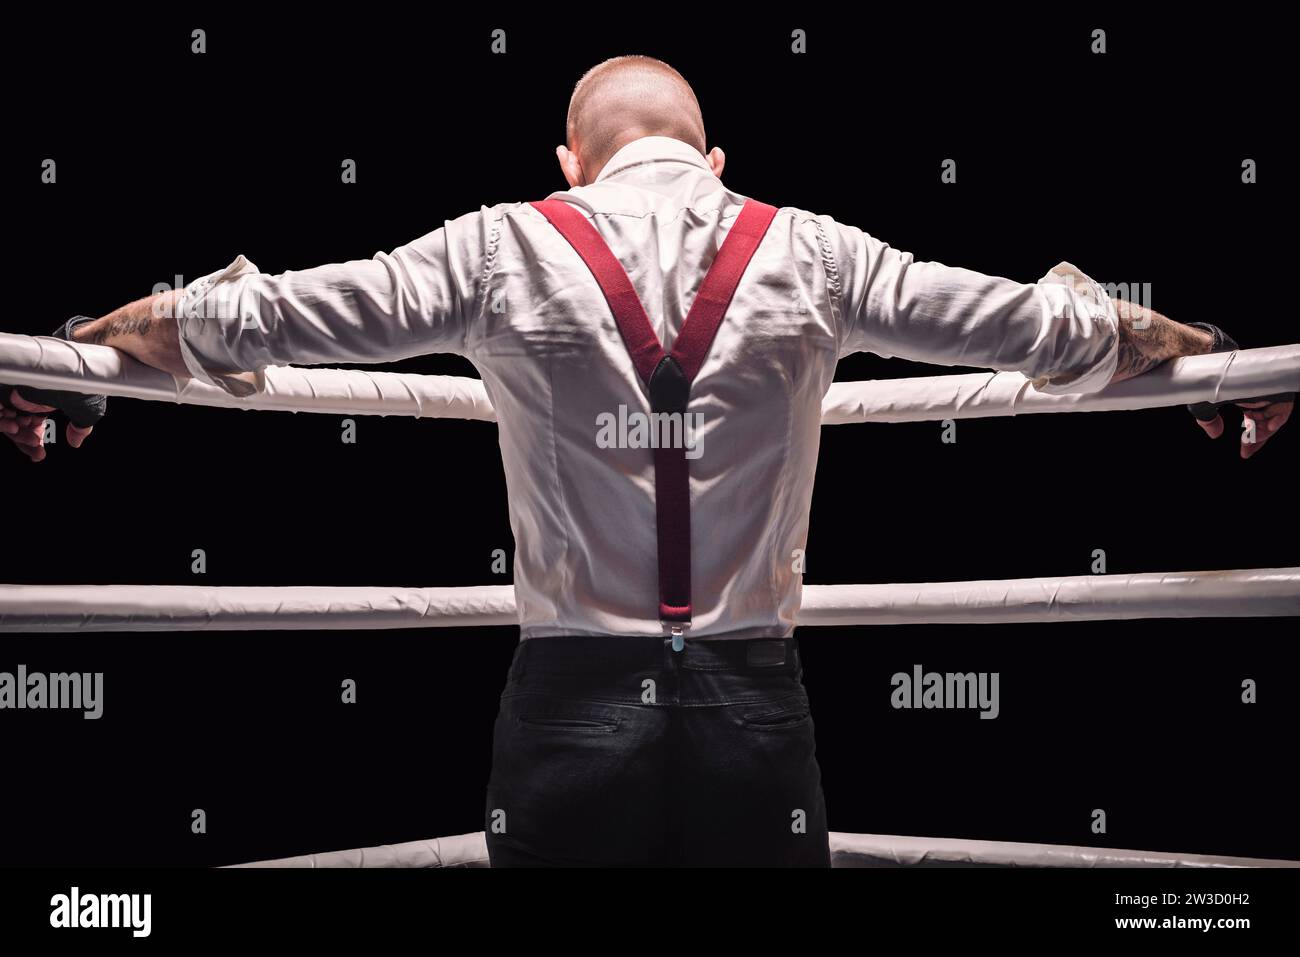 Image d'un homme brutal debout près des cordes de l'anneau. Il prie avant le combat. Le concept de combats de poing. Supports mixtes Banque D'Images